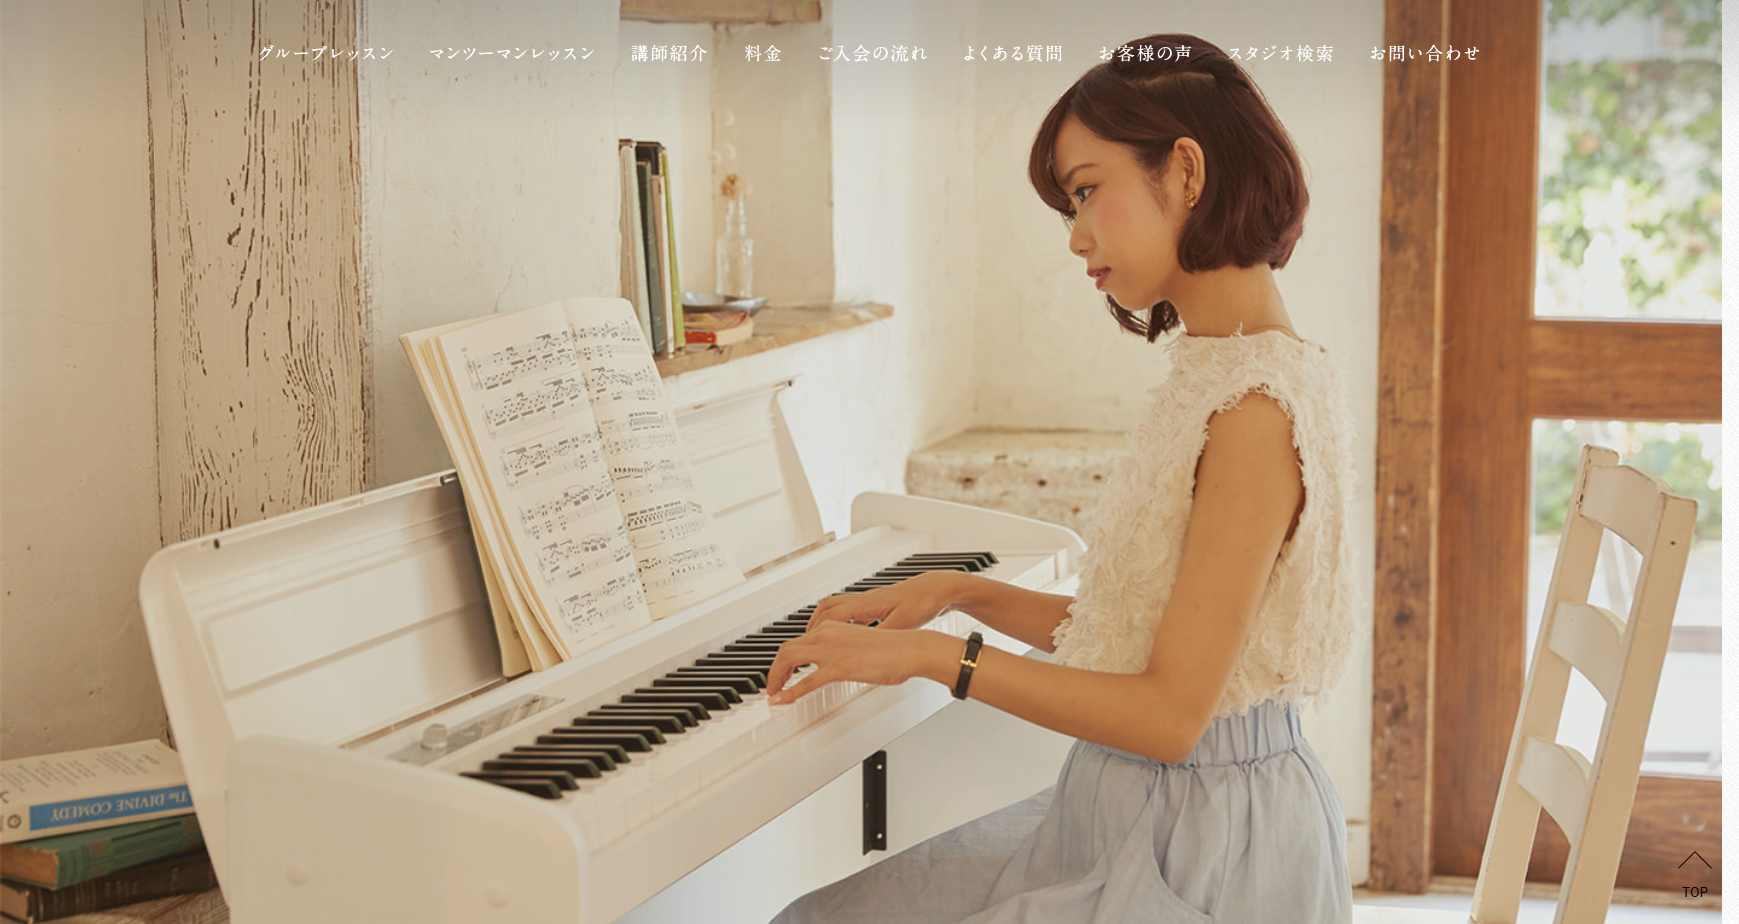 椿音楽教室｜東京でピアノ教室など11の音楽教室を開講